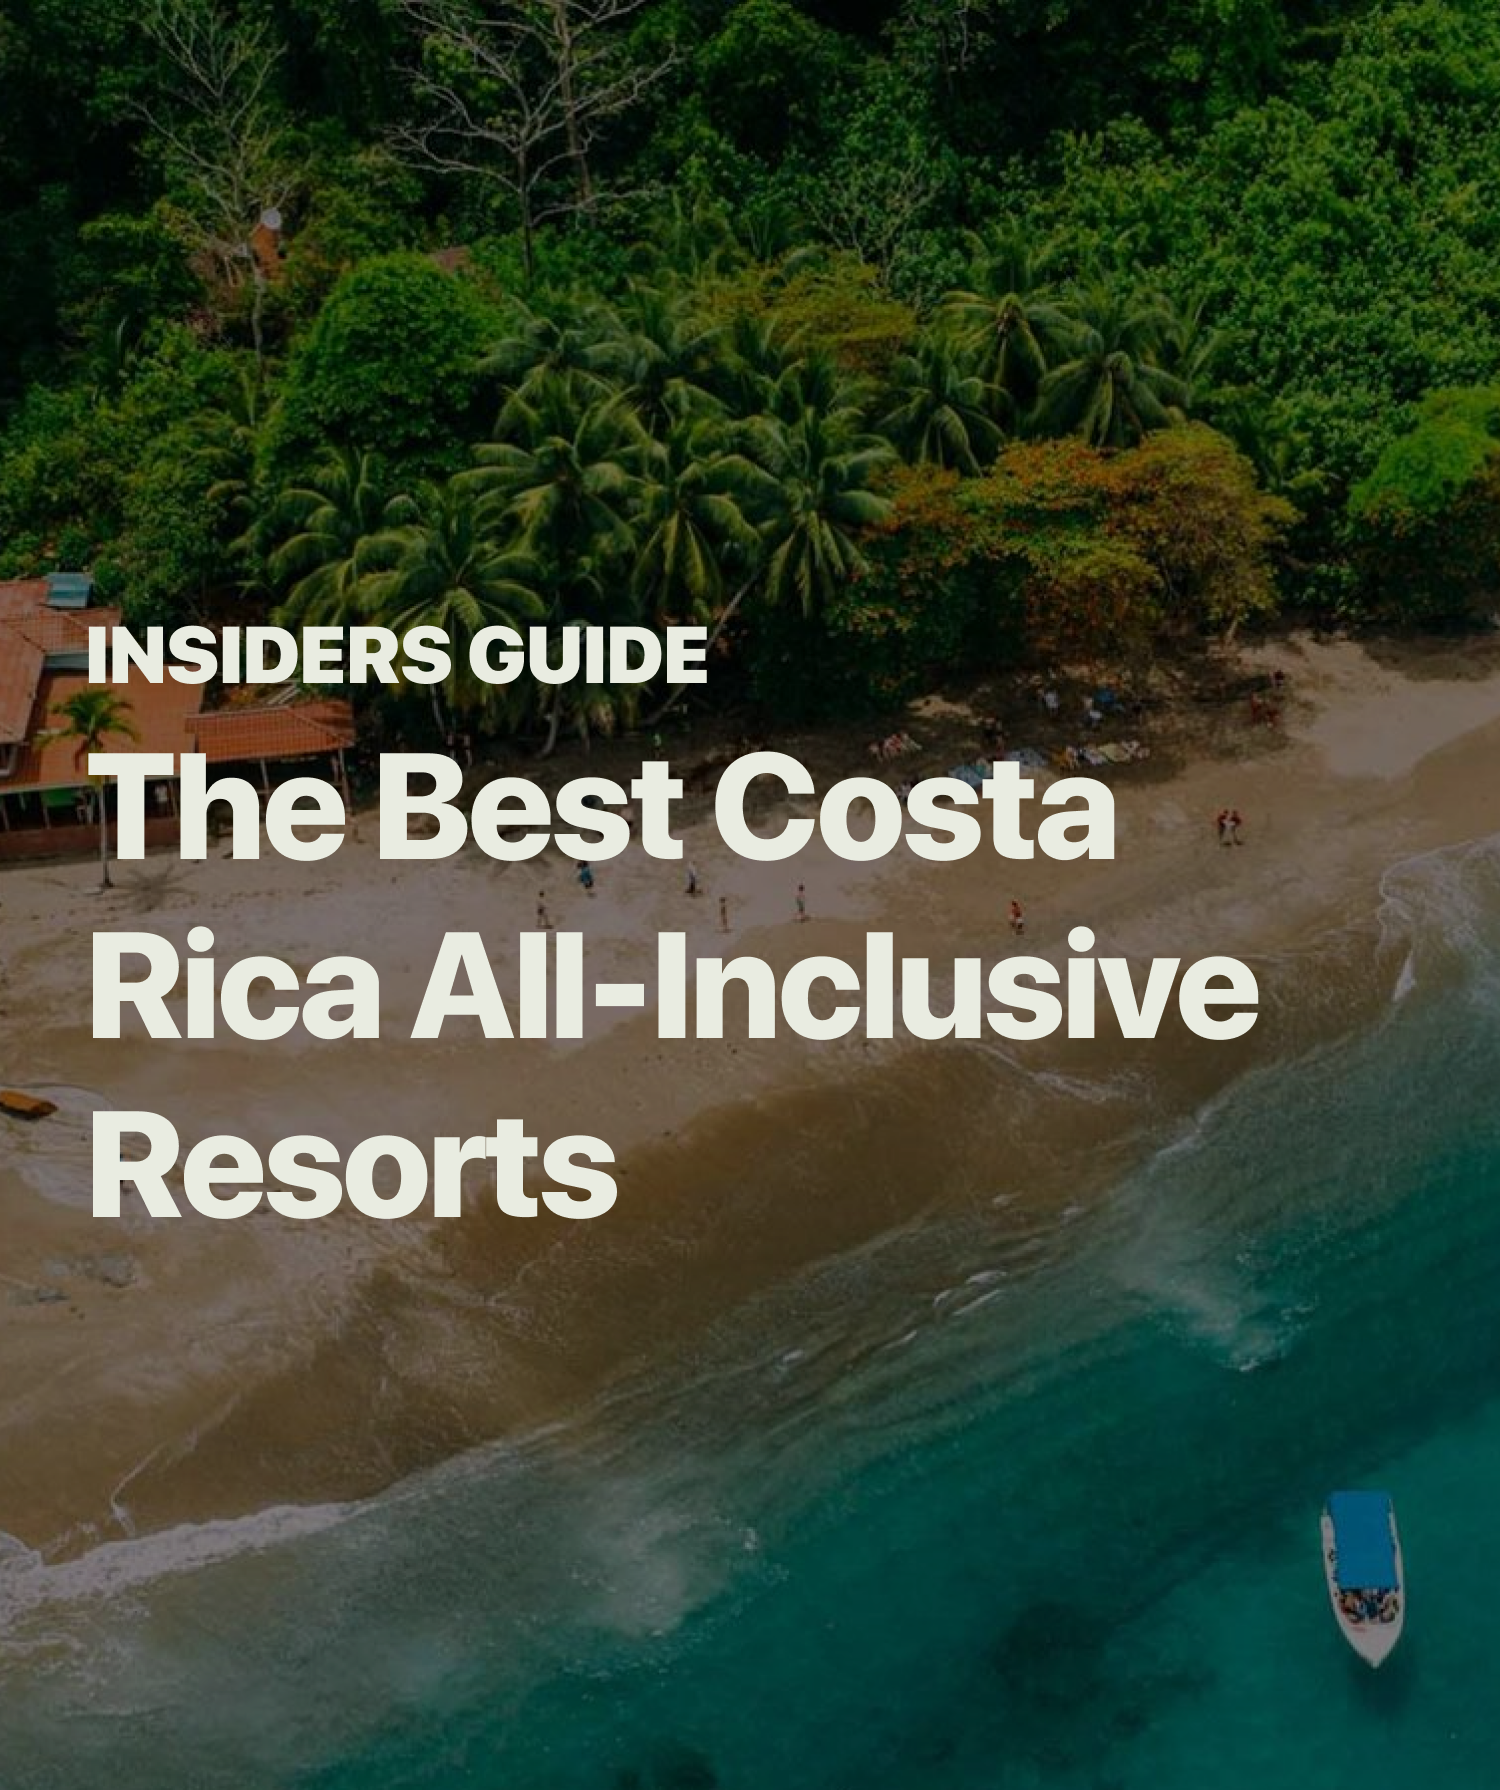 Top 7 All Inclusive Hotels in Costa Rica